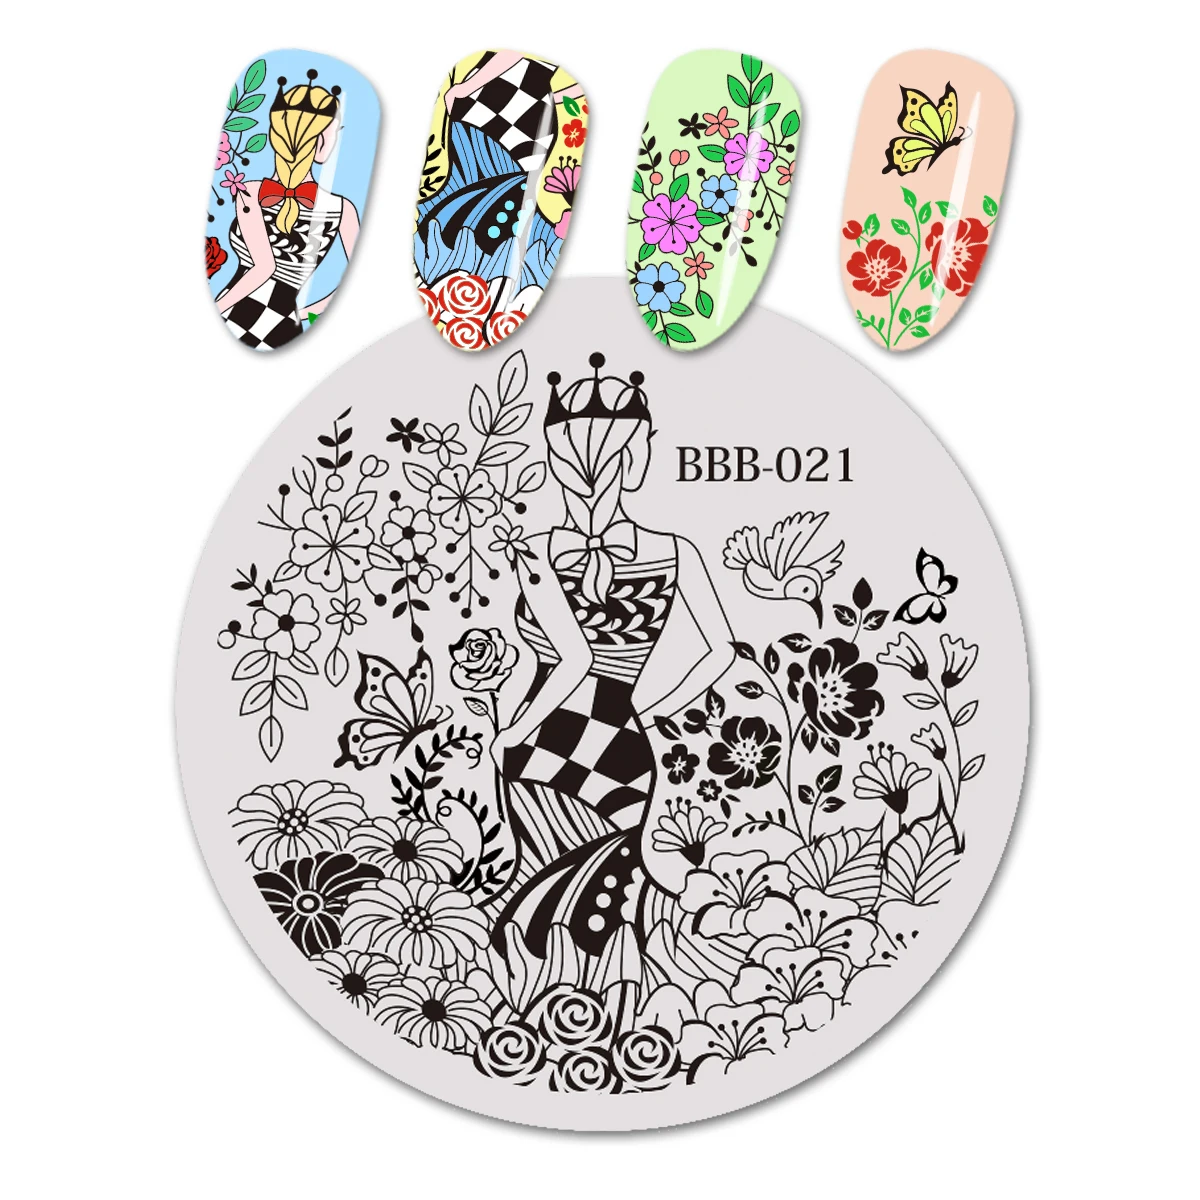 BeautyBigBang штамповочная пластина для ногтей круглый Леопардовый цветочный узор винтажный штамп для ногтей из нержавеющей стали шаблон инструмент для дизайна ногтей BBB-013